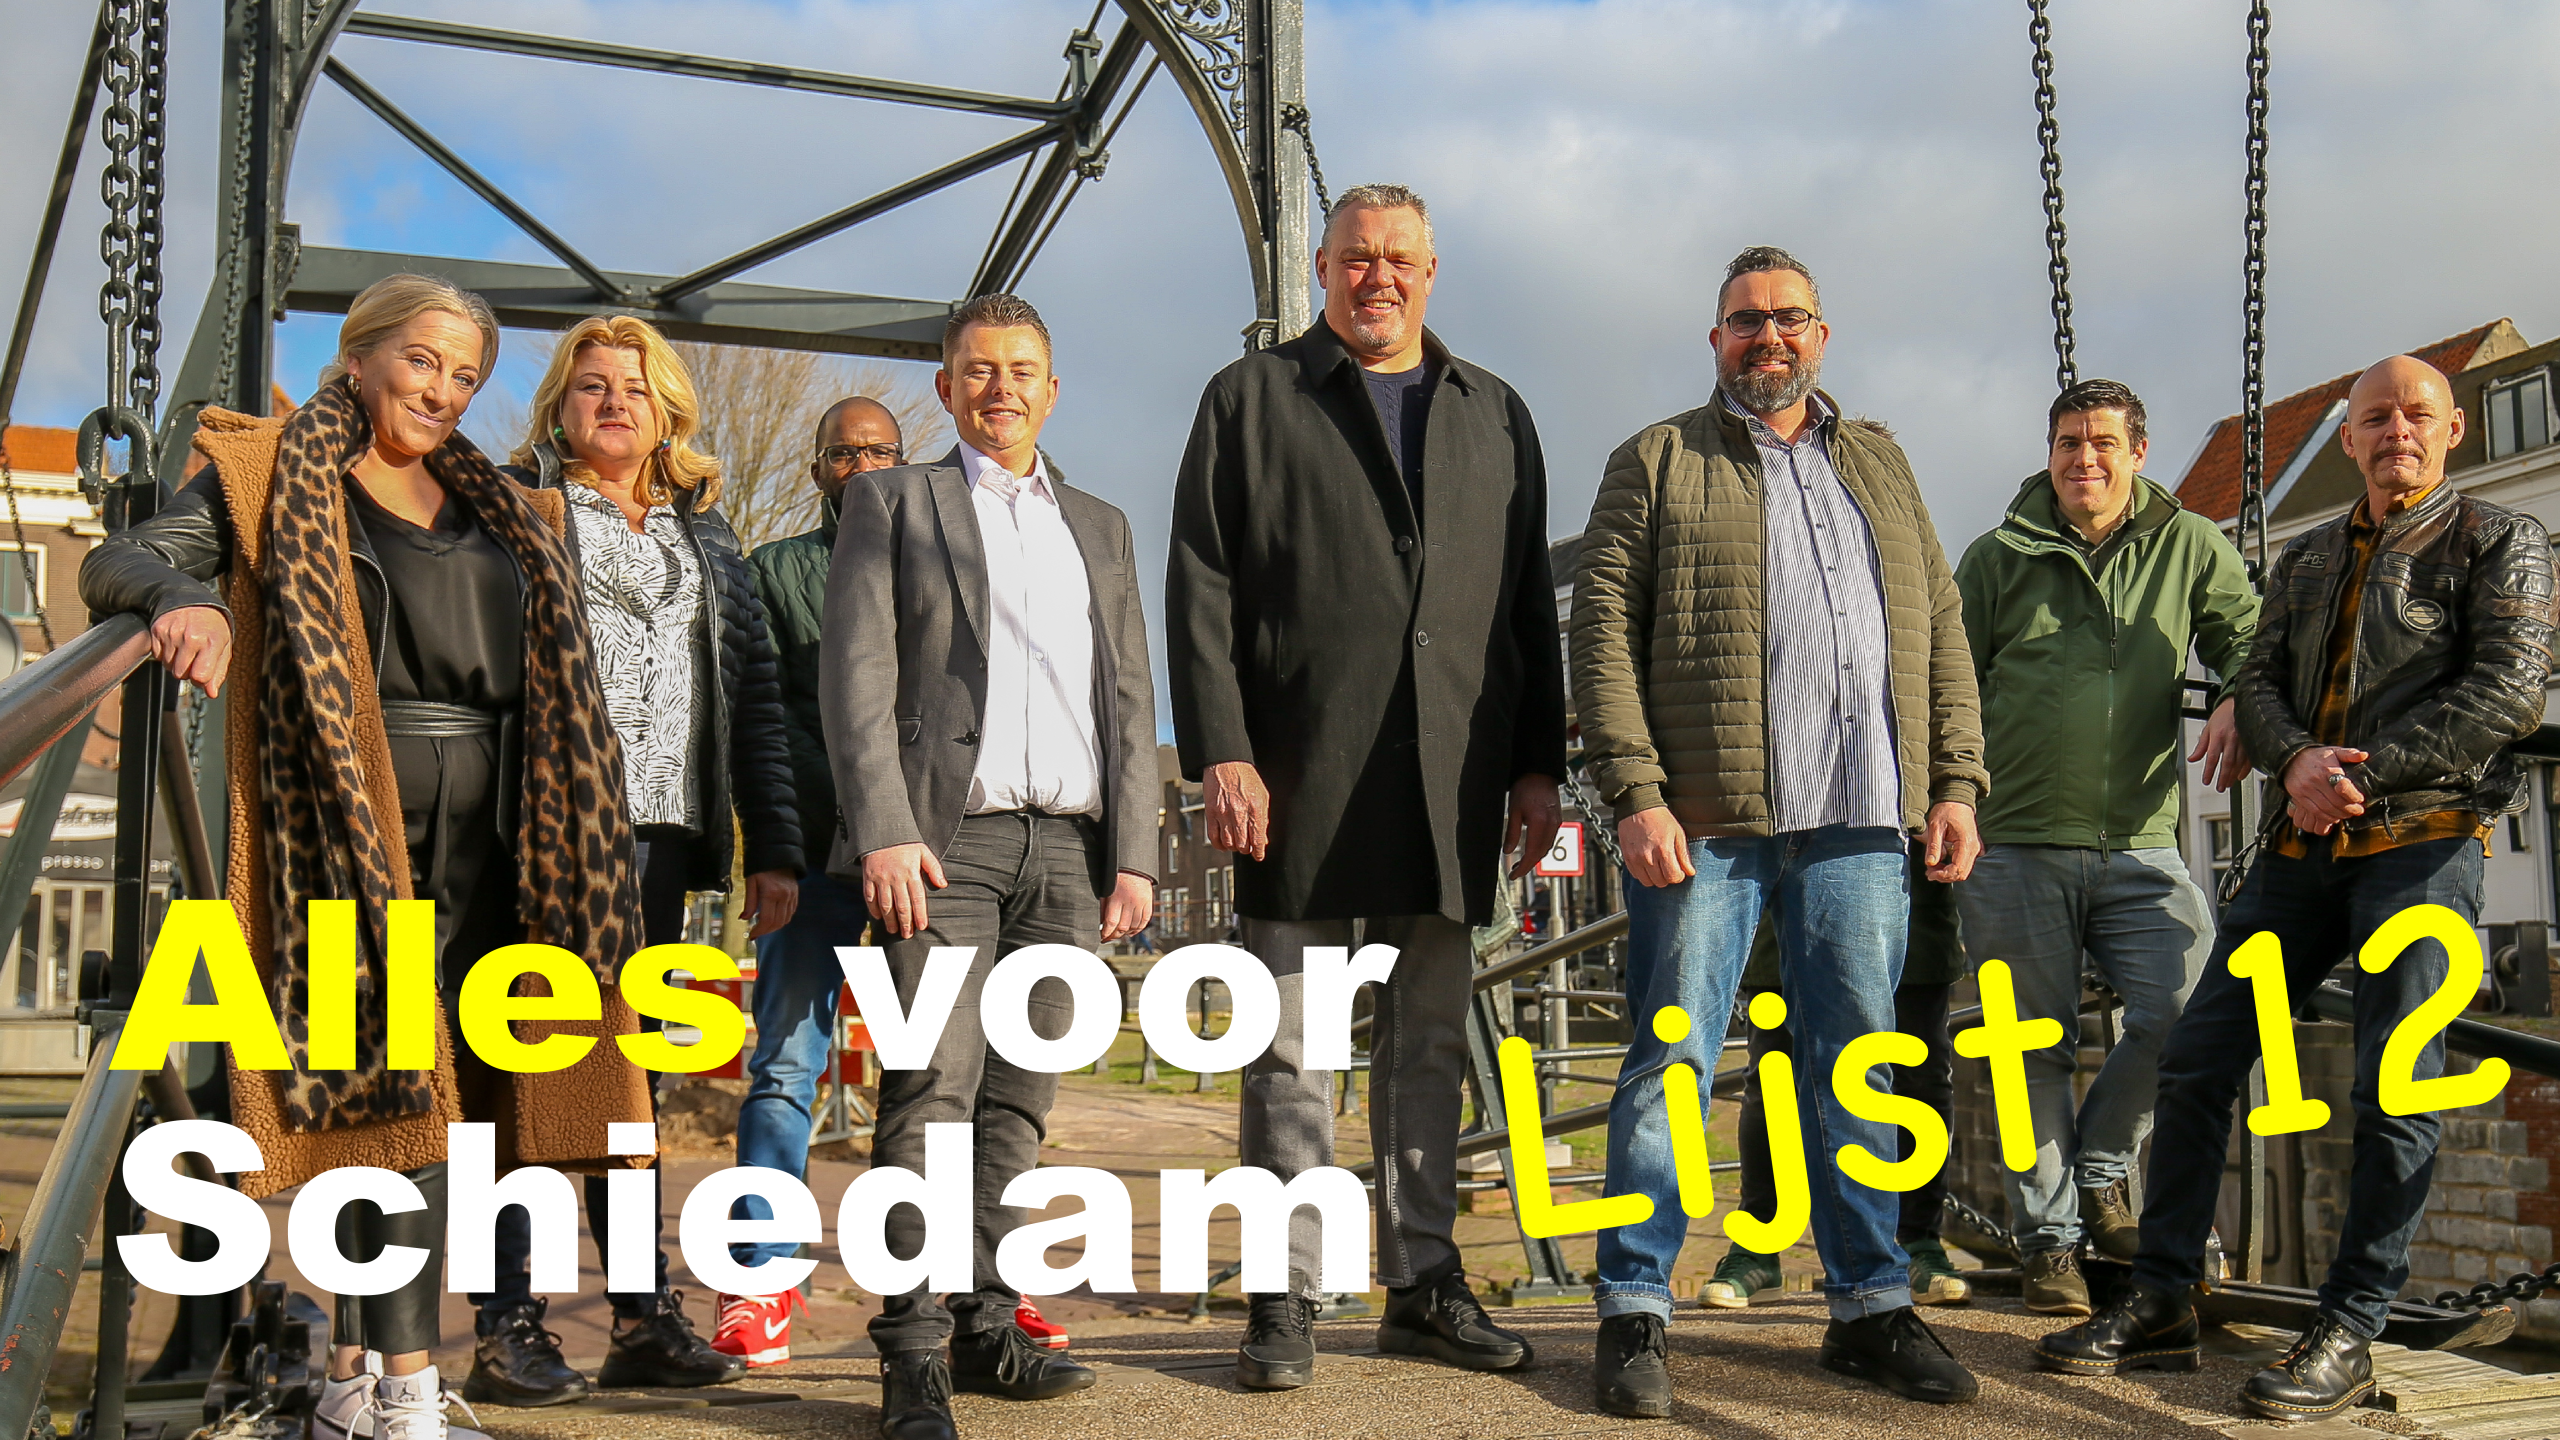 Topuitslag voor Alles voor Schiedam Lijst 12 tijdens gemeenteraadsverkiezingen Schiedam